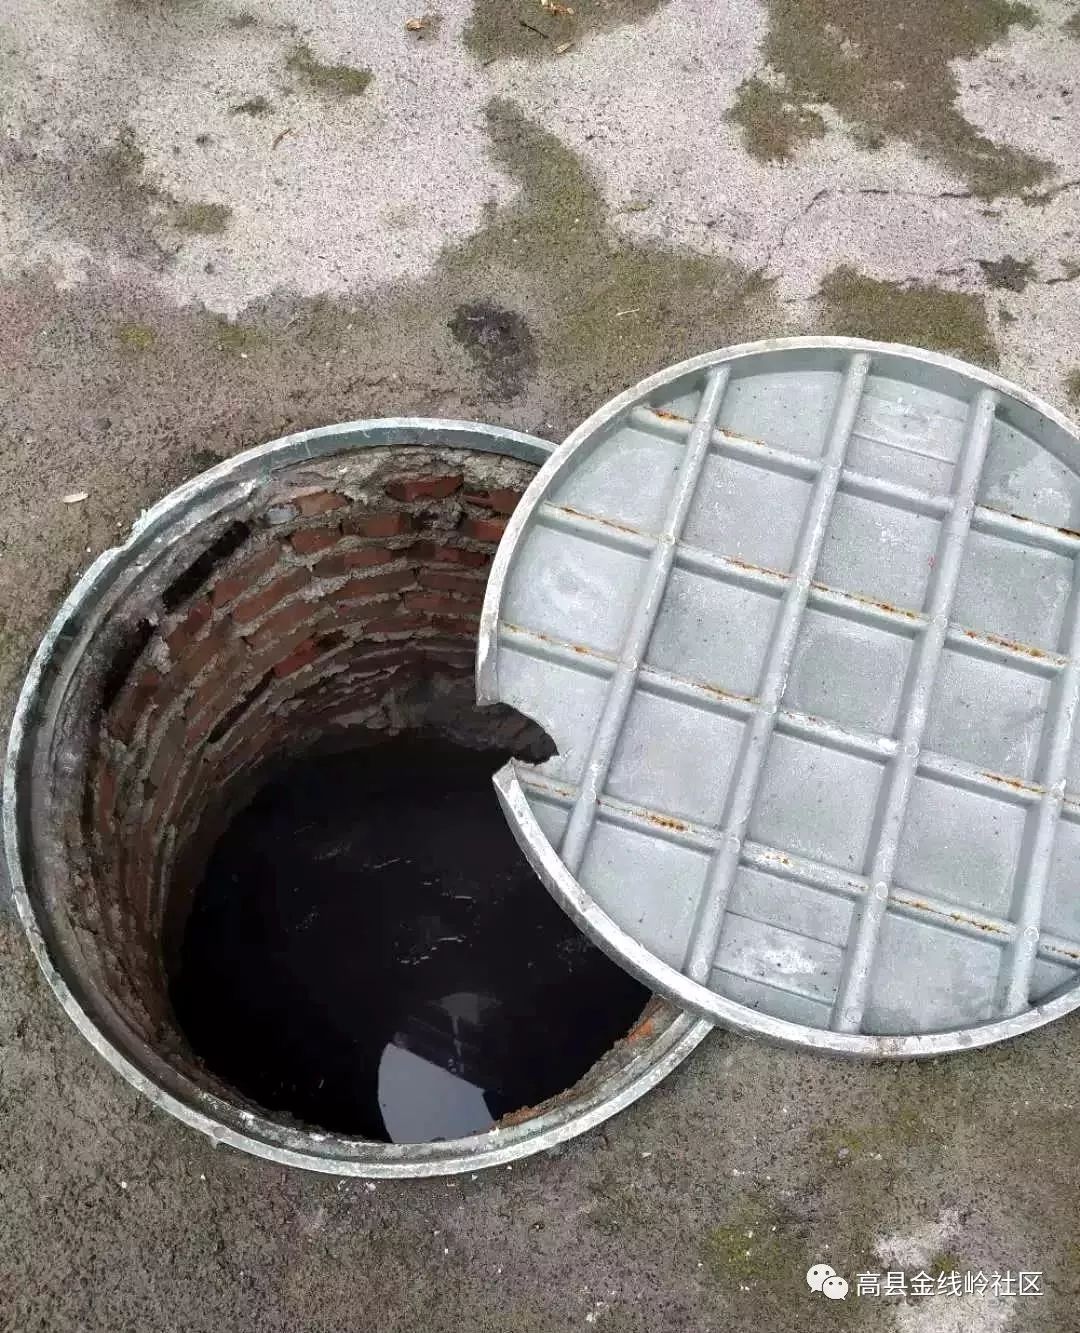 导致井盖翻转,结果其中一个小孩不慎掉入了下水道井里